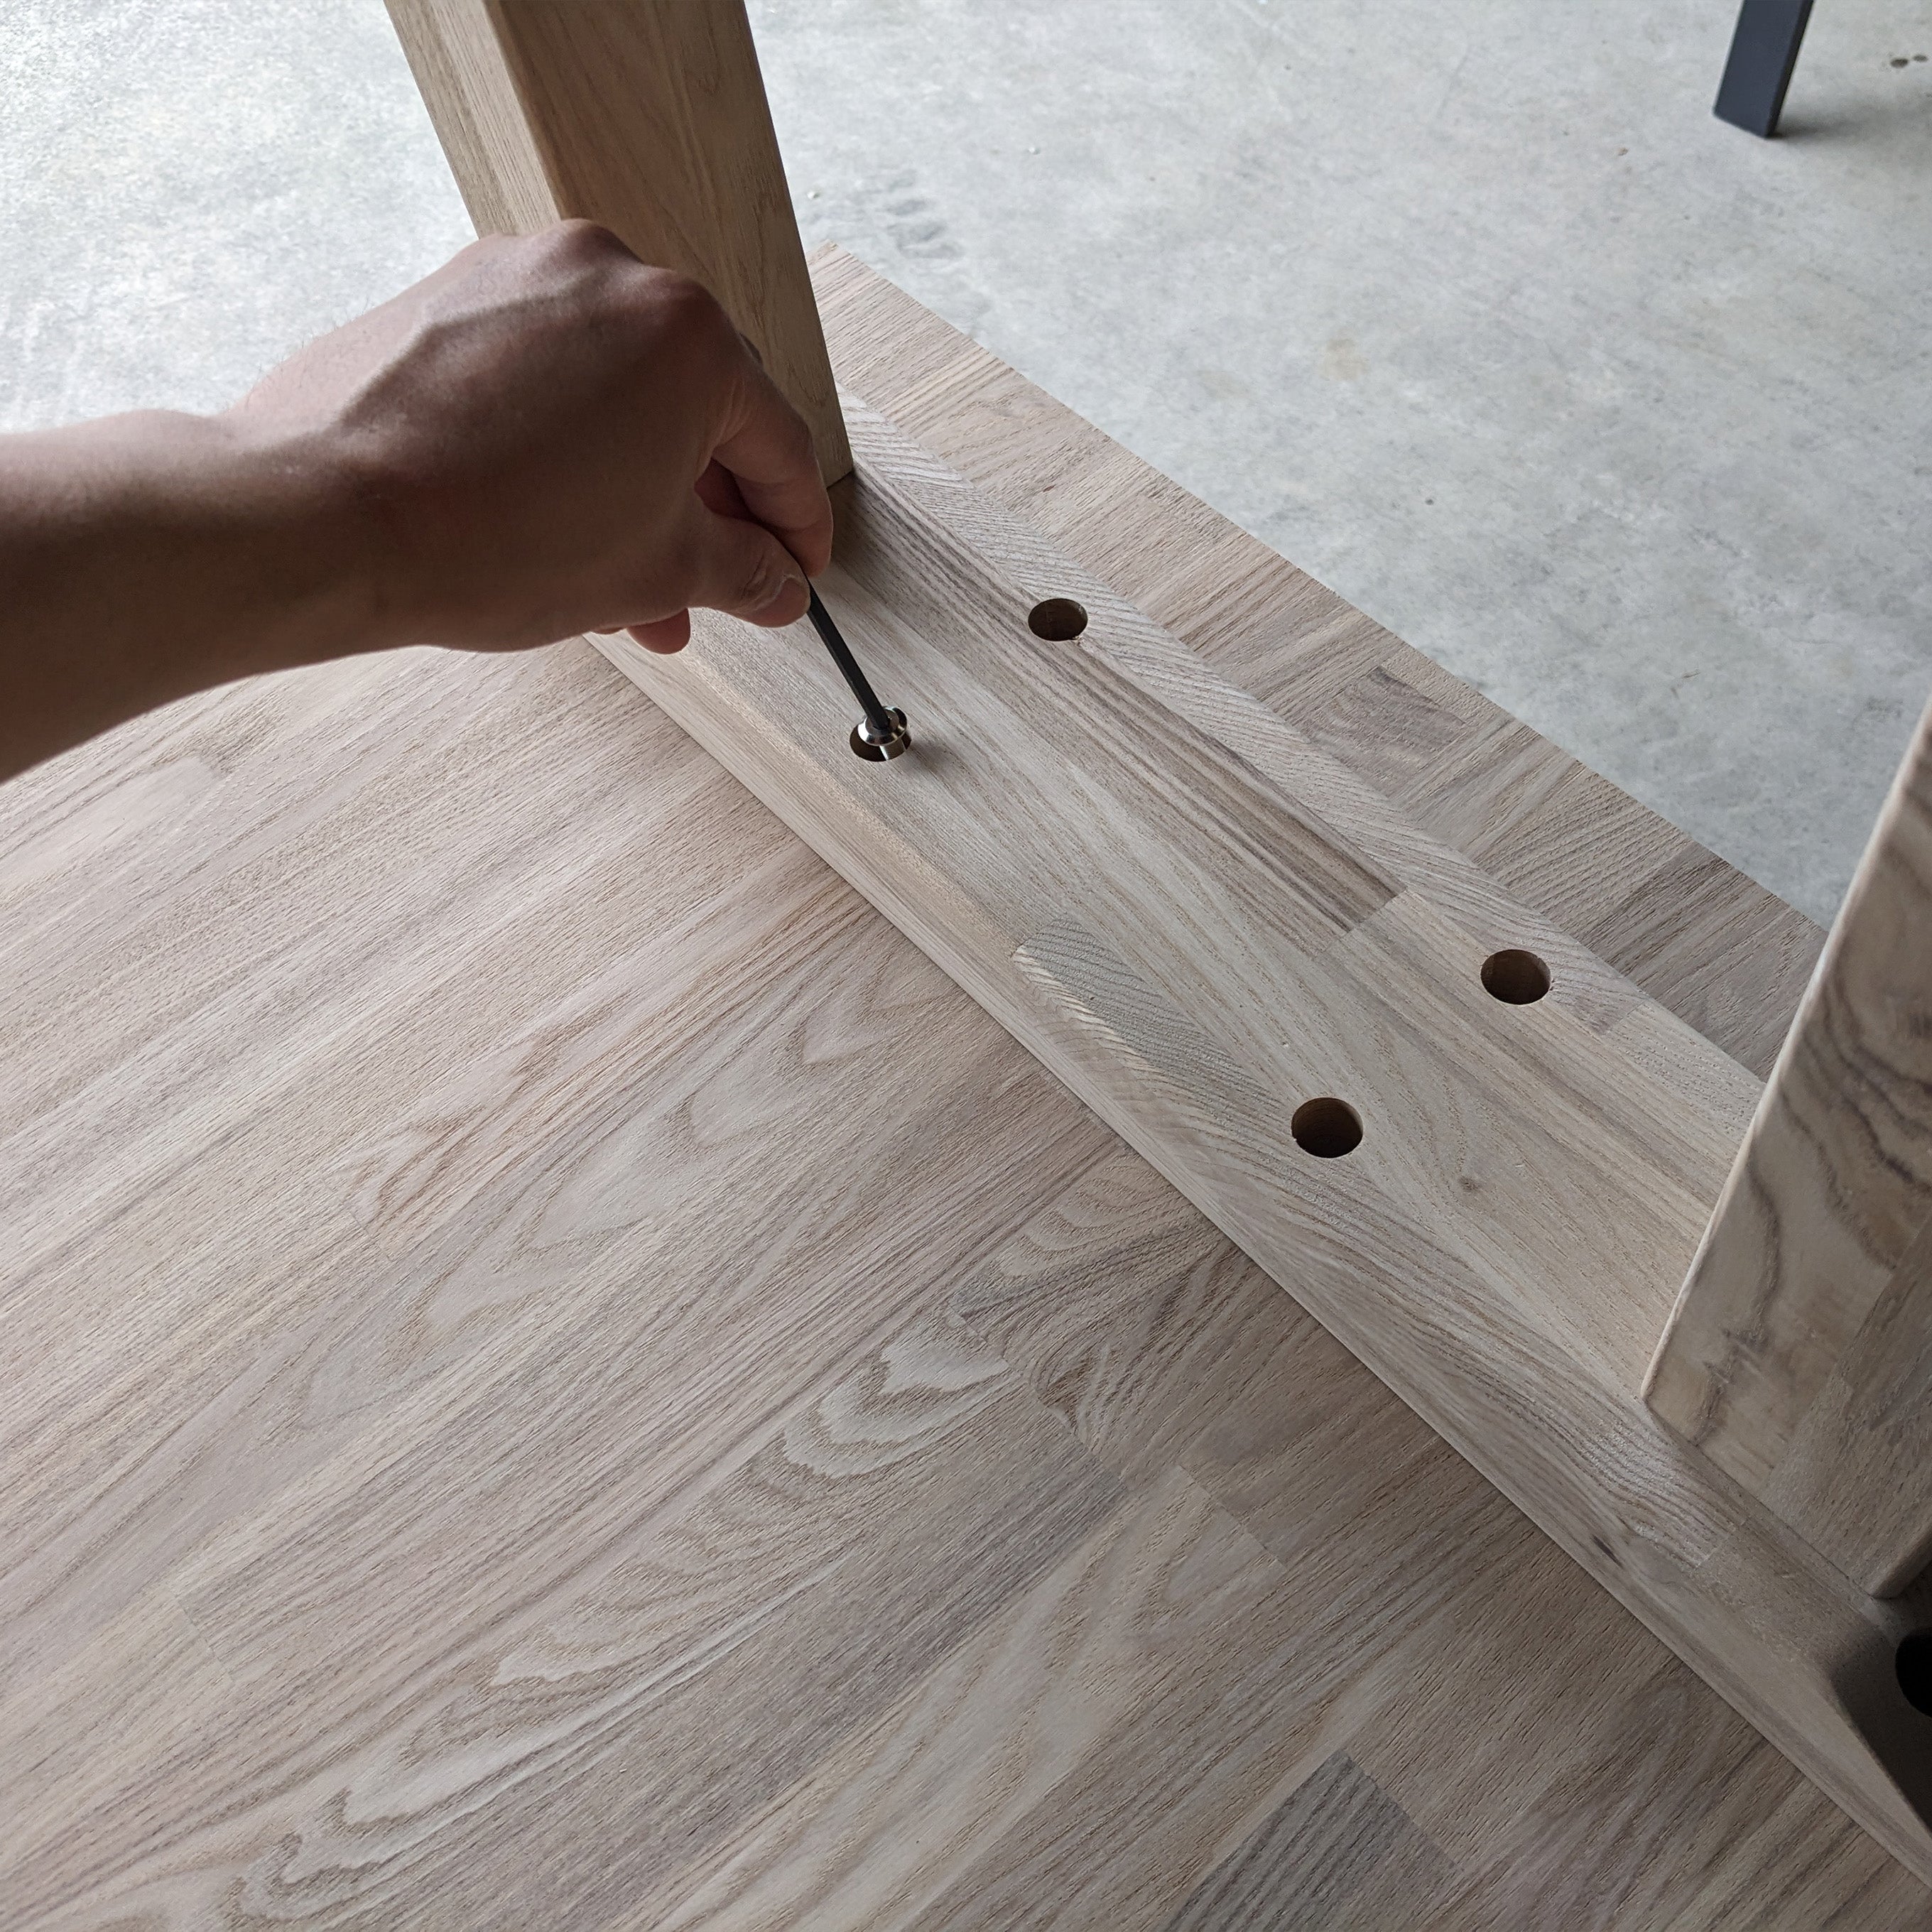 木製 テーブル脚 エ型 オーダーメイド